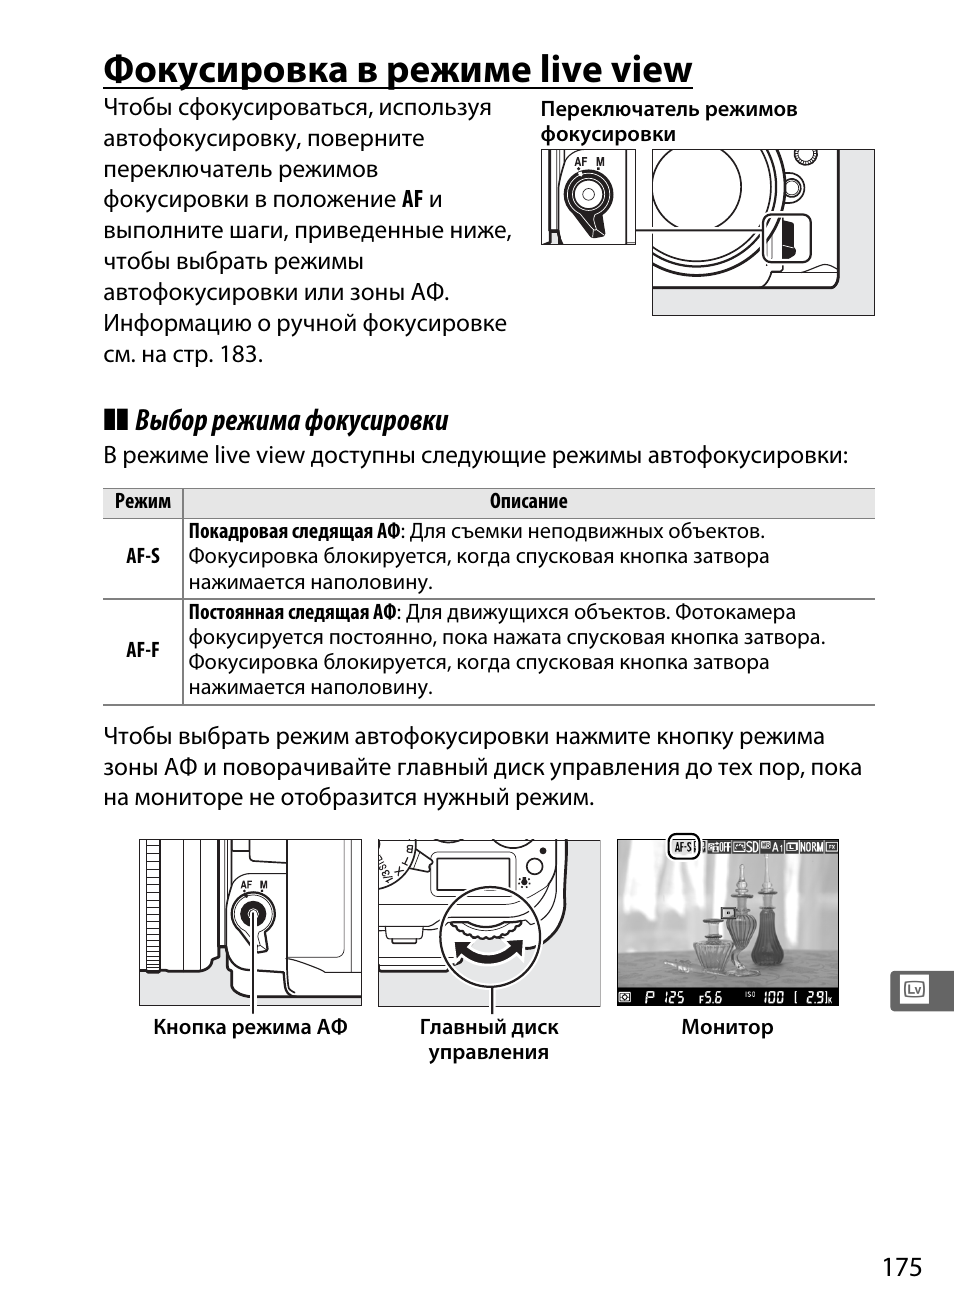 Фокусировка в режиме live view, Выбор режима фокусировки | Инструкция по эксплуатации Nikon Df | Страница 195 / 396